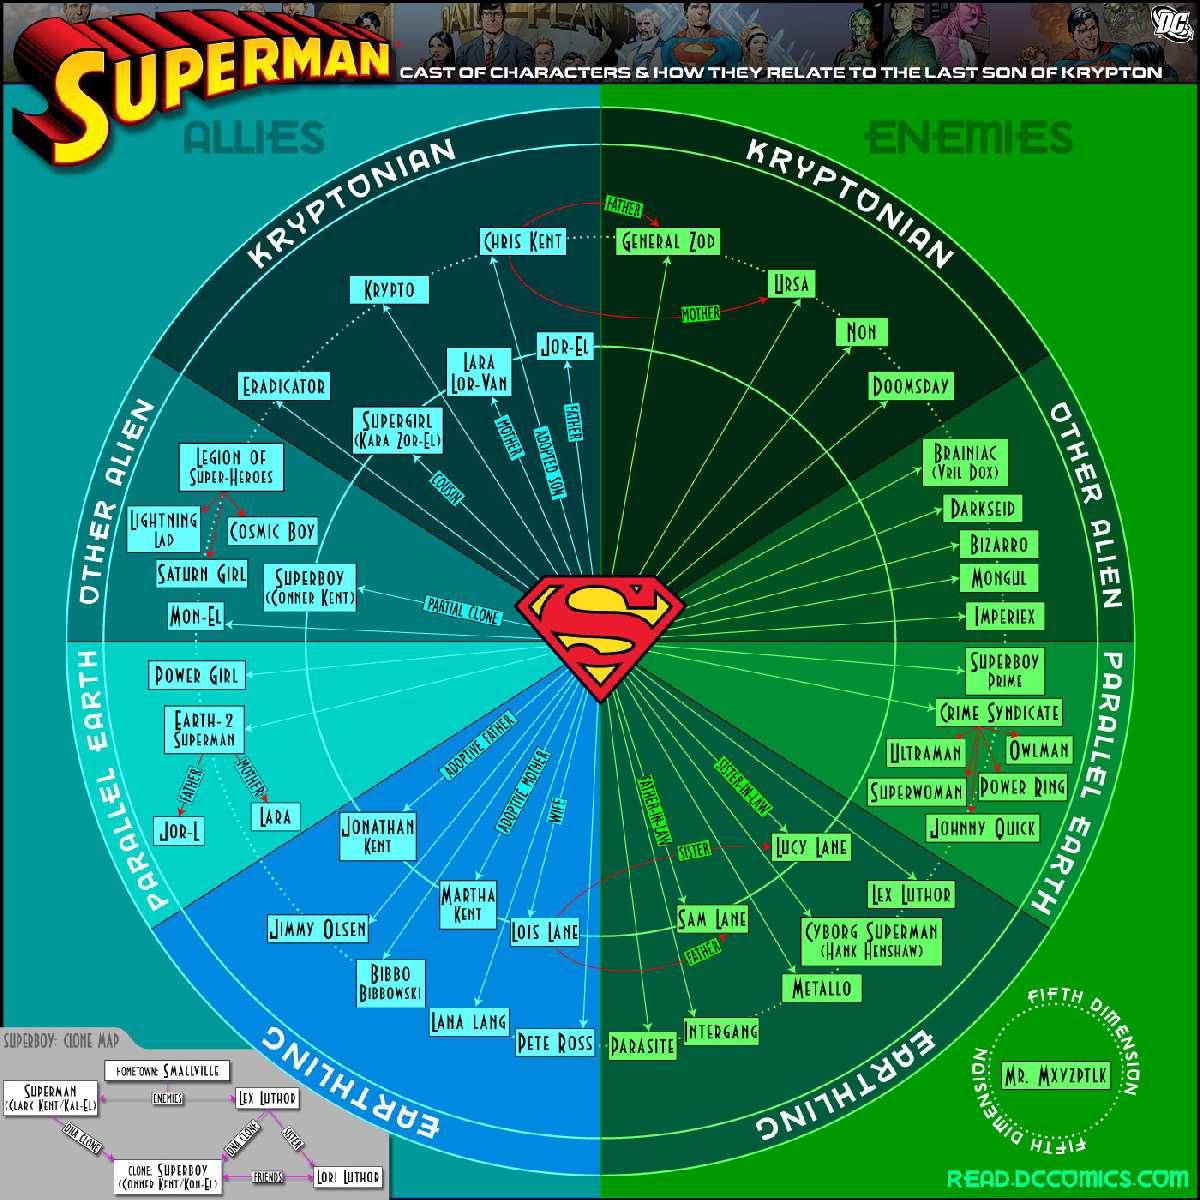 SUPERMAN DIGITAL COMICS